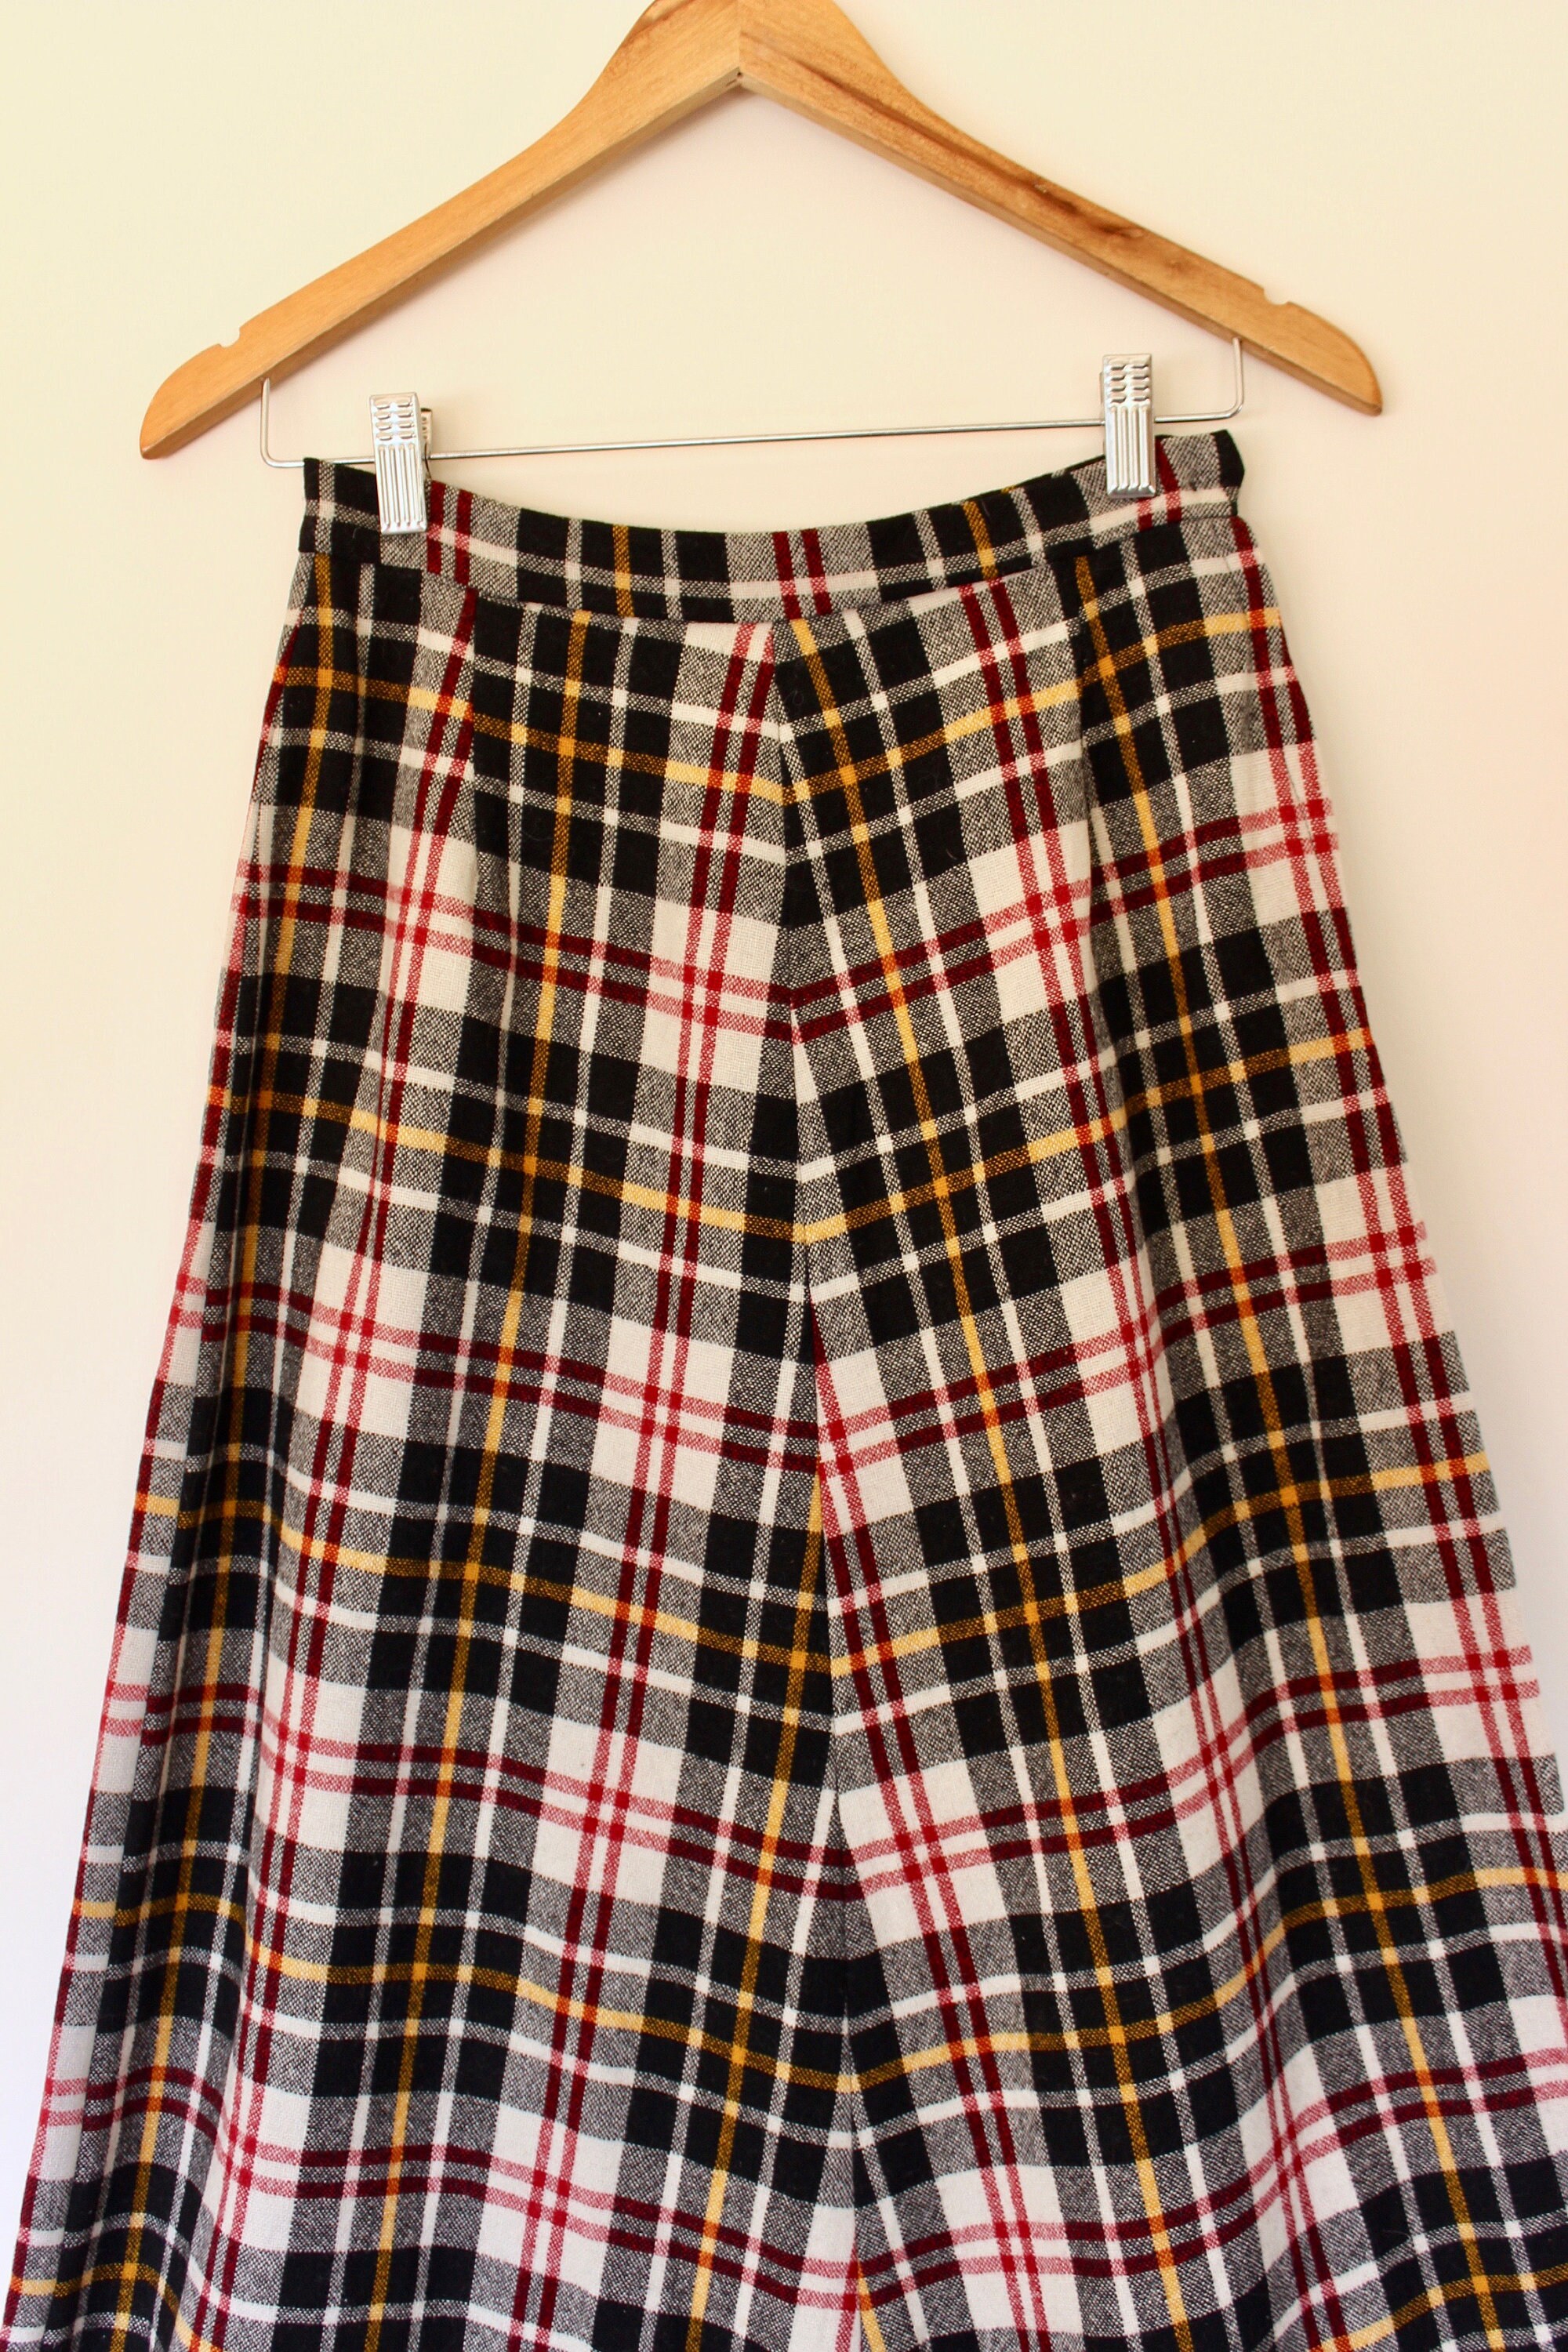 Ragtrade Plaid Vintage Skirt Plain Maxi Skirt Ankle Length - Etsy